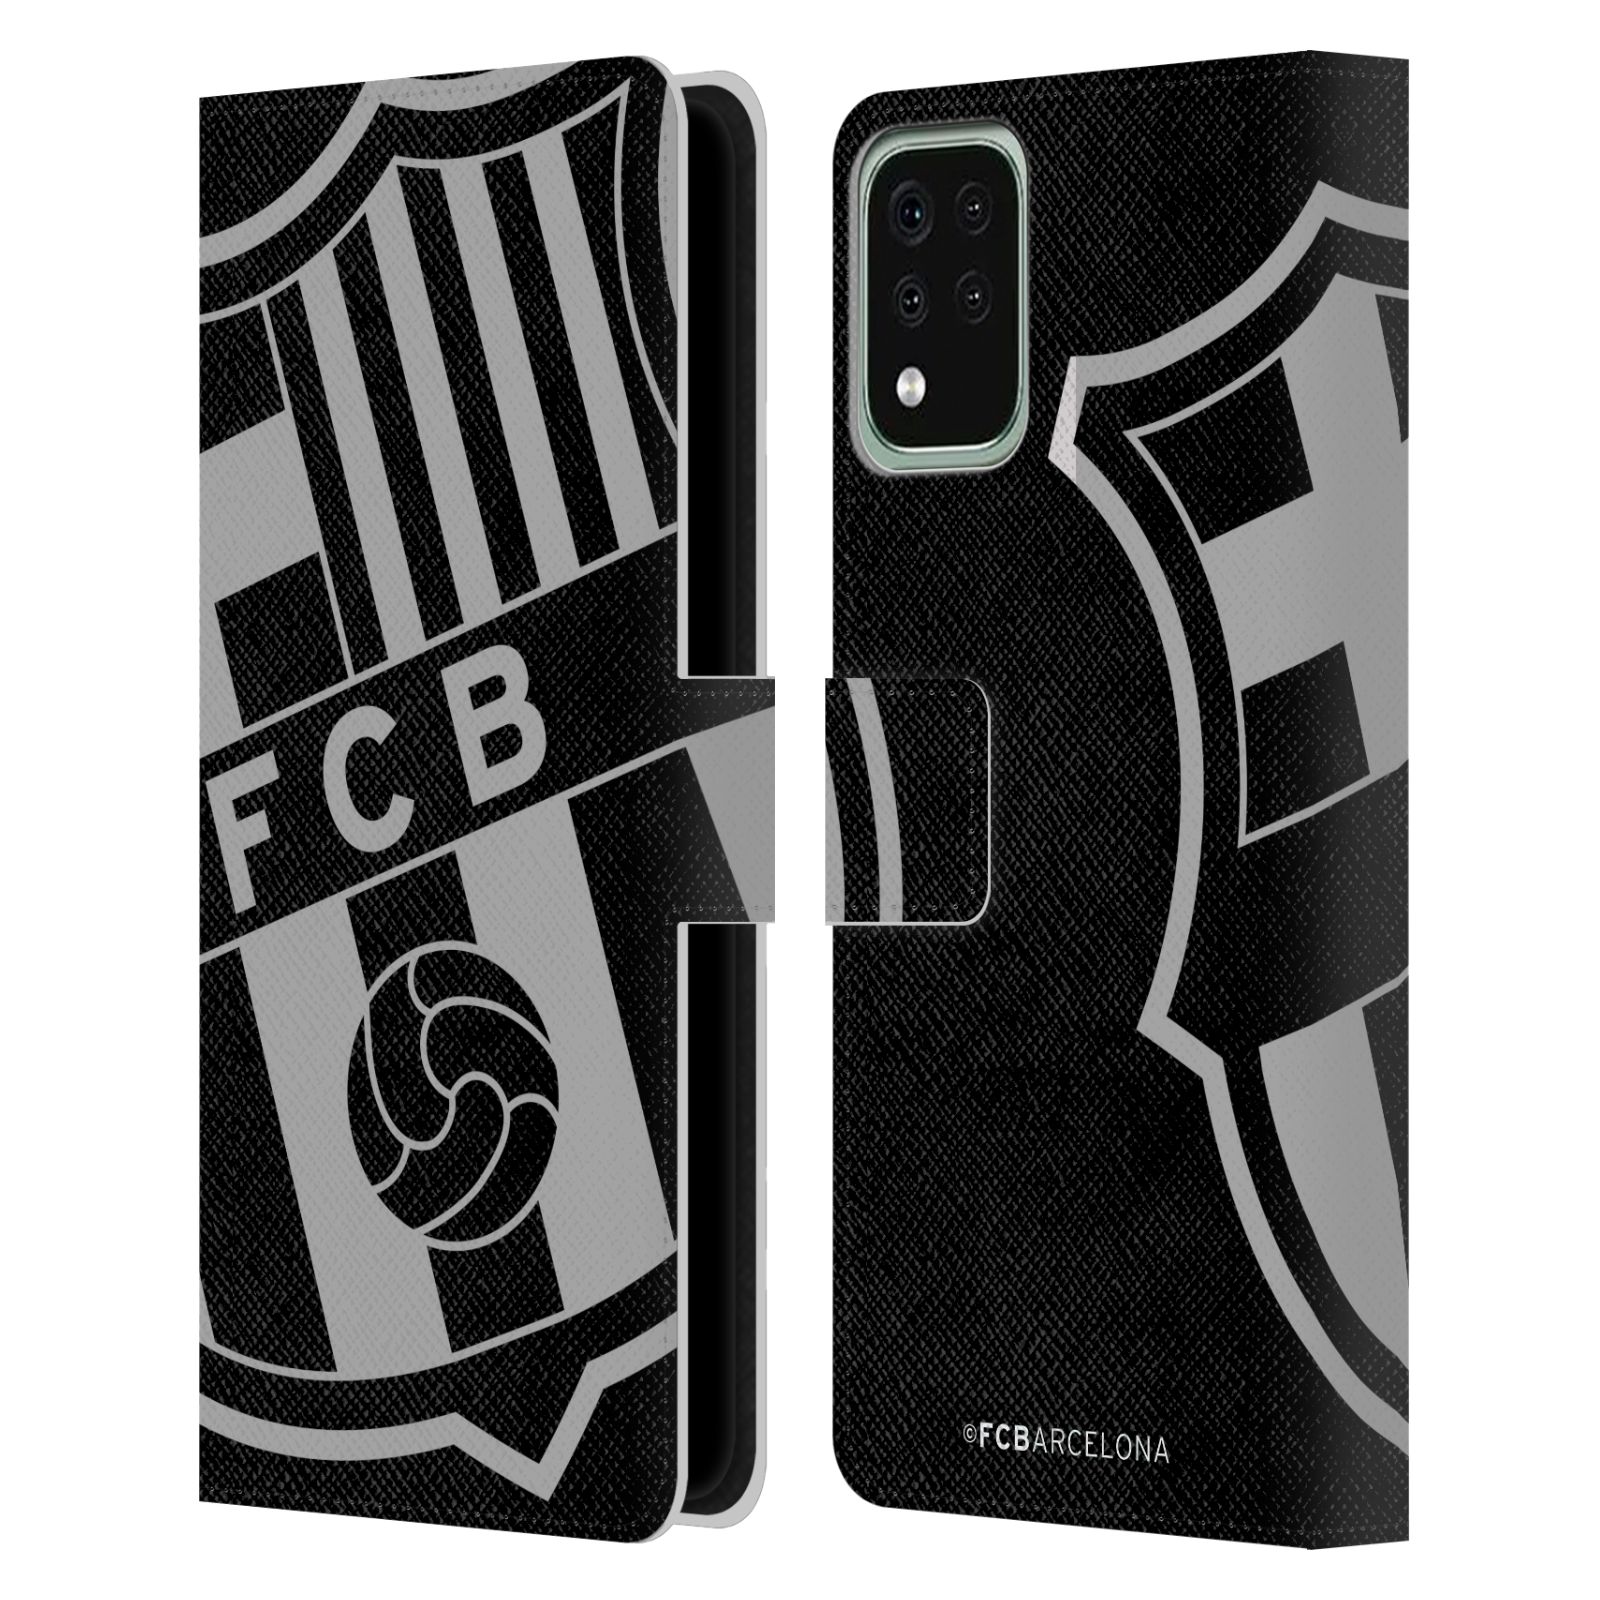 Pouzdro na mobil LG K42 / K52 / K62 - HEAD CASE - FC Barcelona - černošedé logo